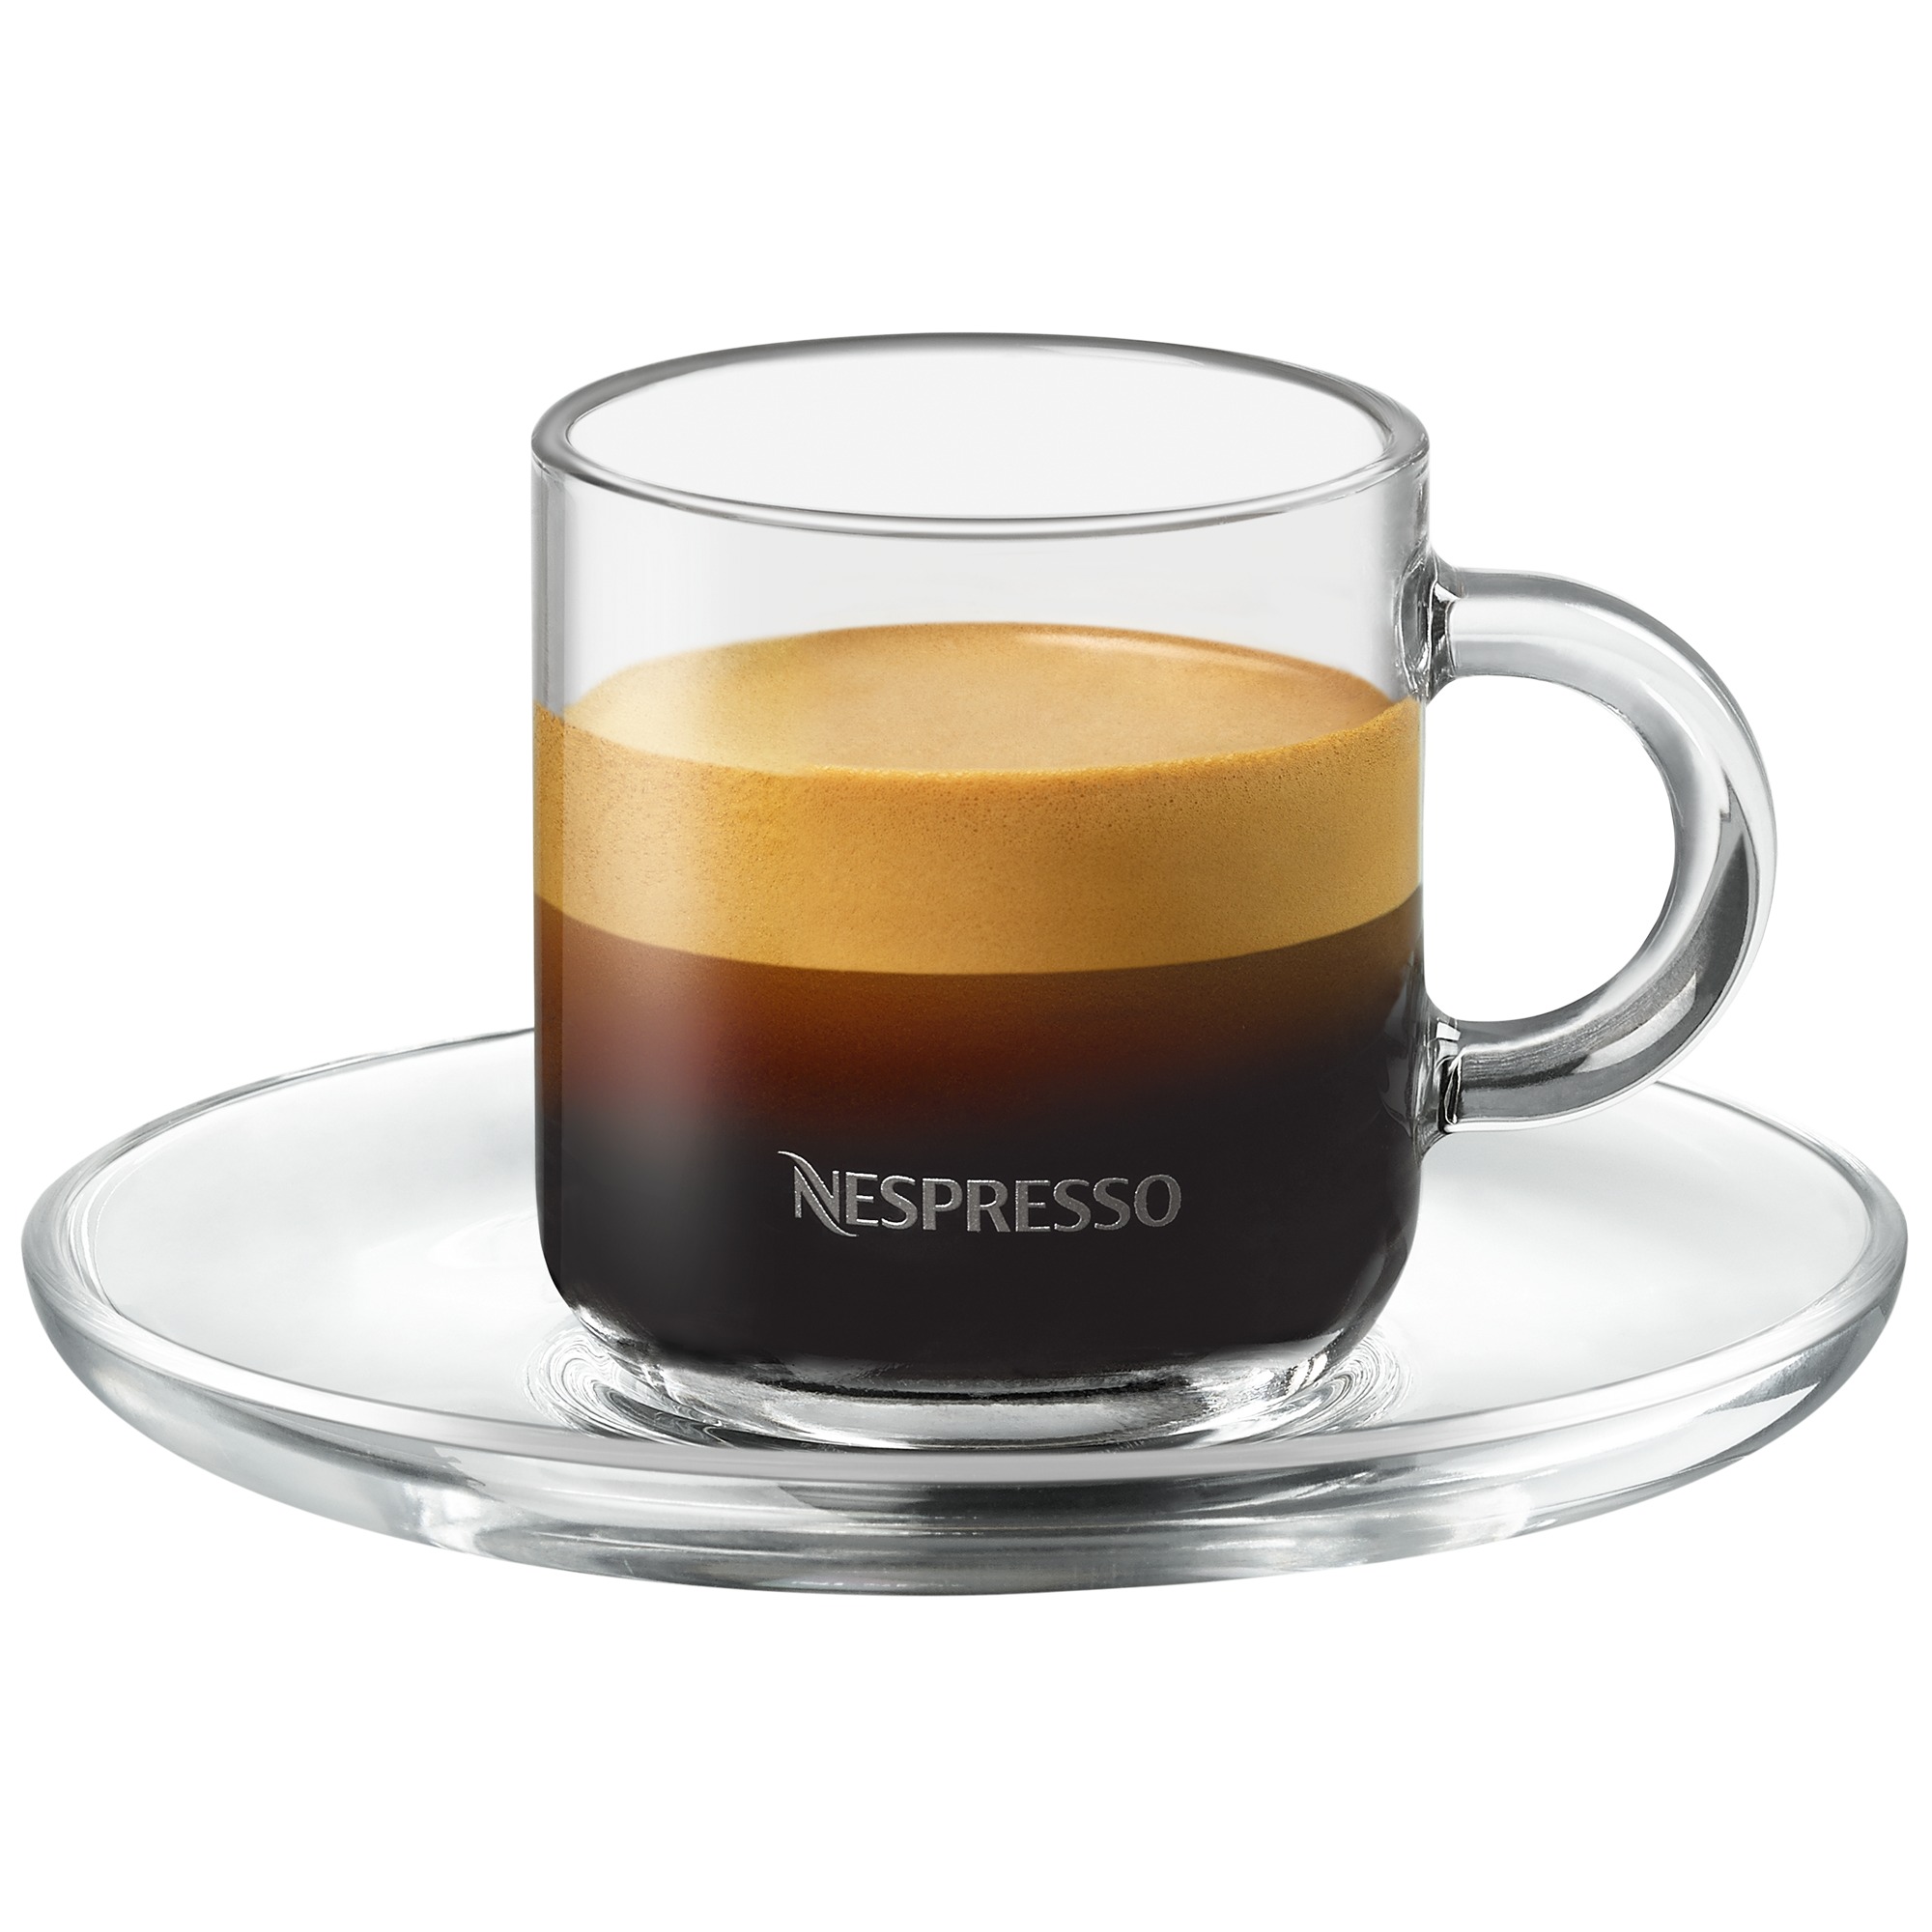 Nespresso Vertuo Kaffee Mug Tassen Set Von Nespresso Aus Glastassen